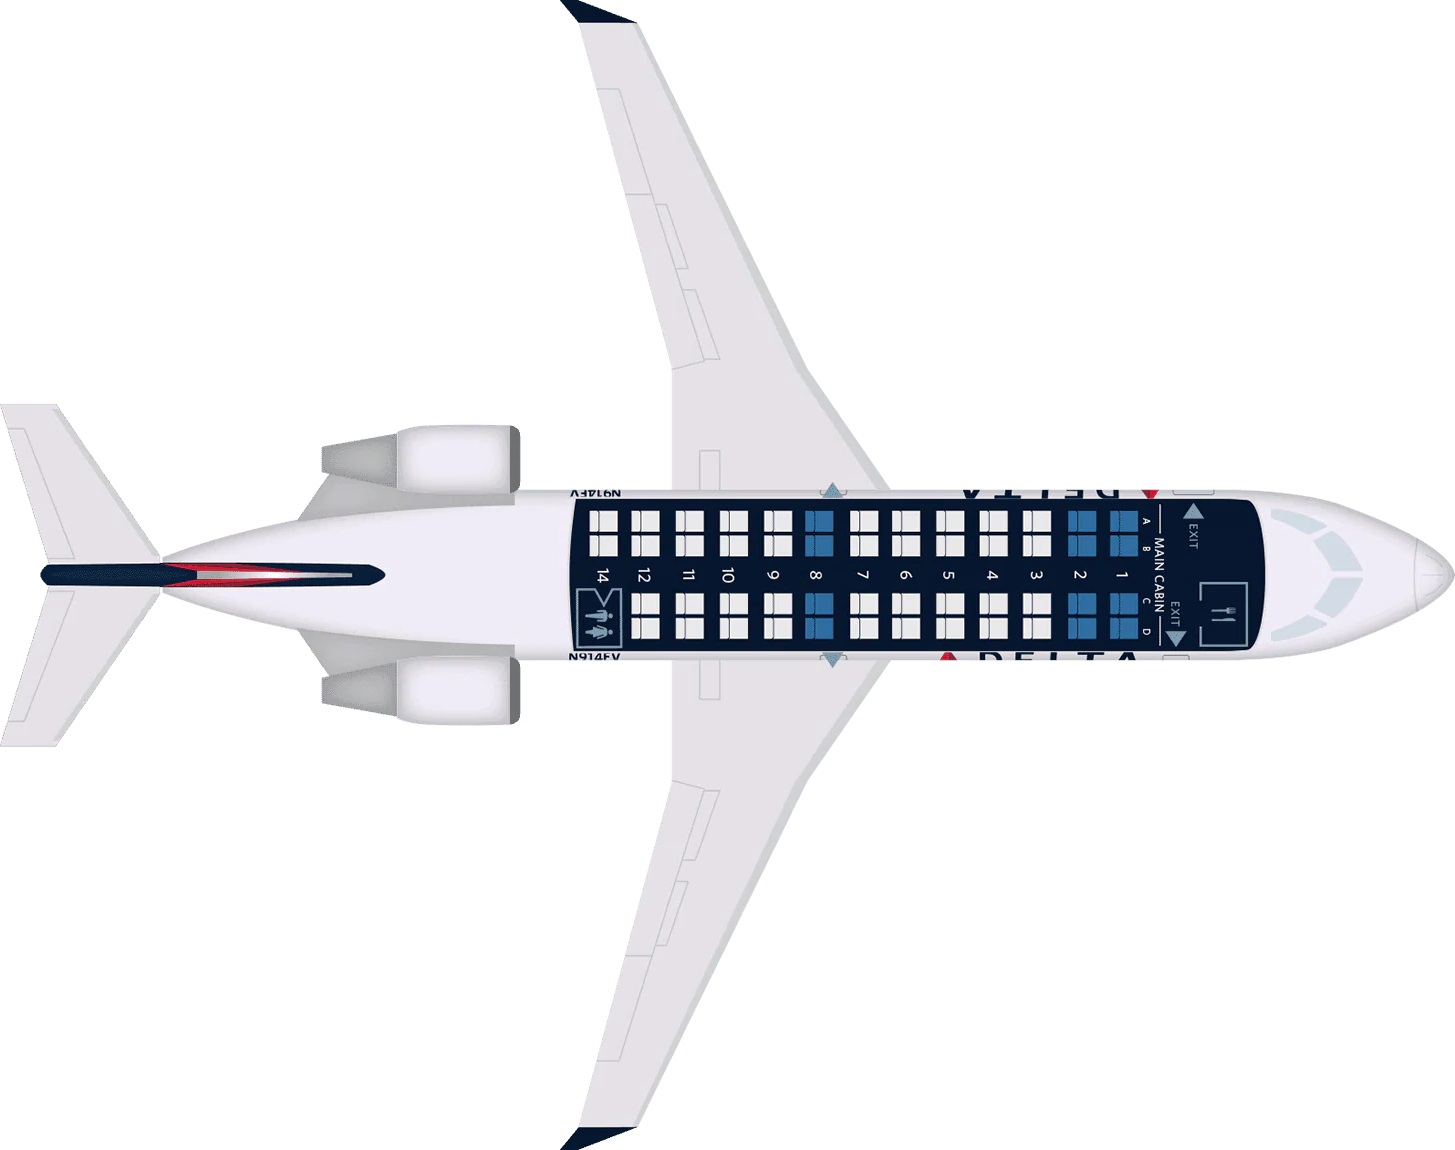 CRJ200 Seat Map